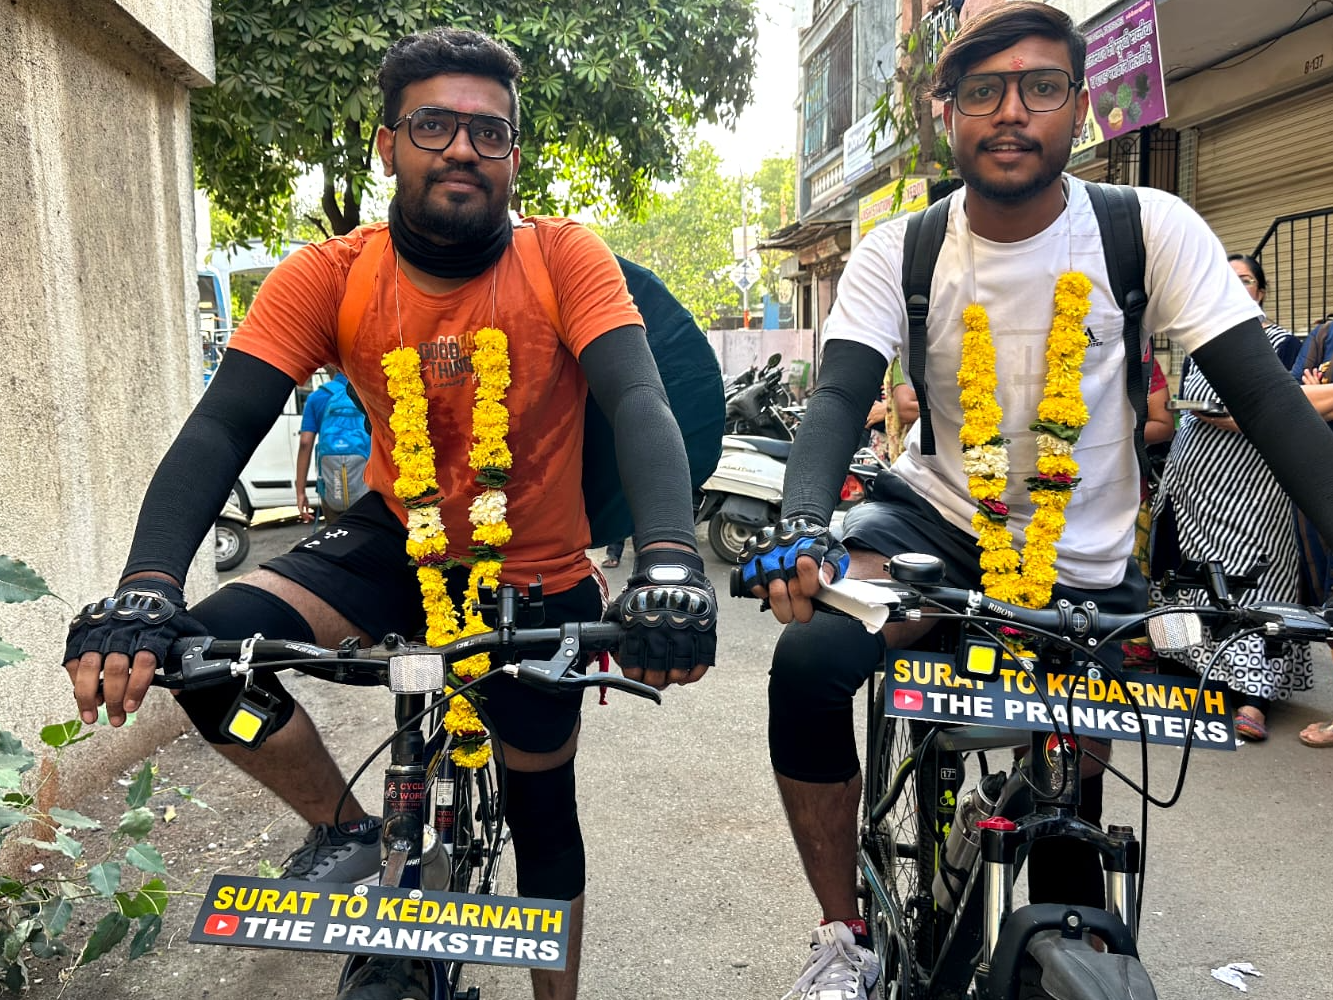 विश्व साइकिल दिवस पर सनातन धर्म का संदेश लेकर सूरत से केदारनाथ तक साइकिल यात्रा पर निकले दो भाई